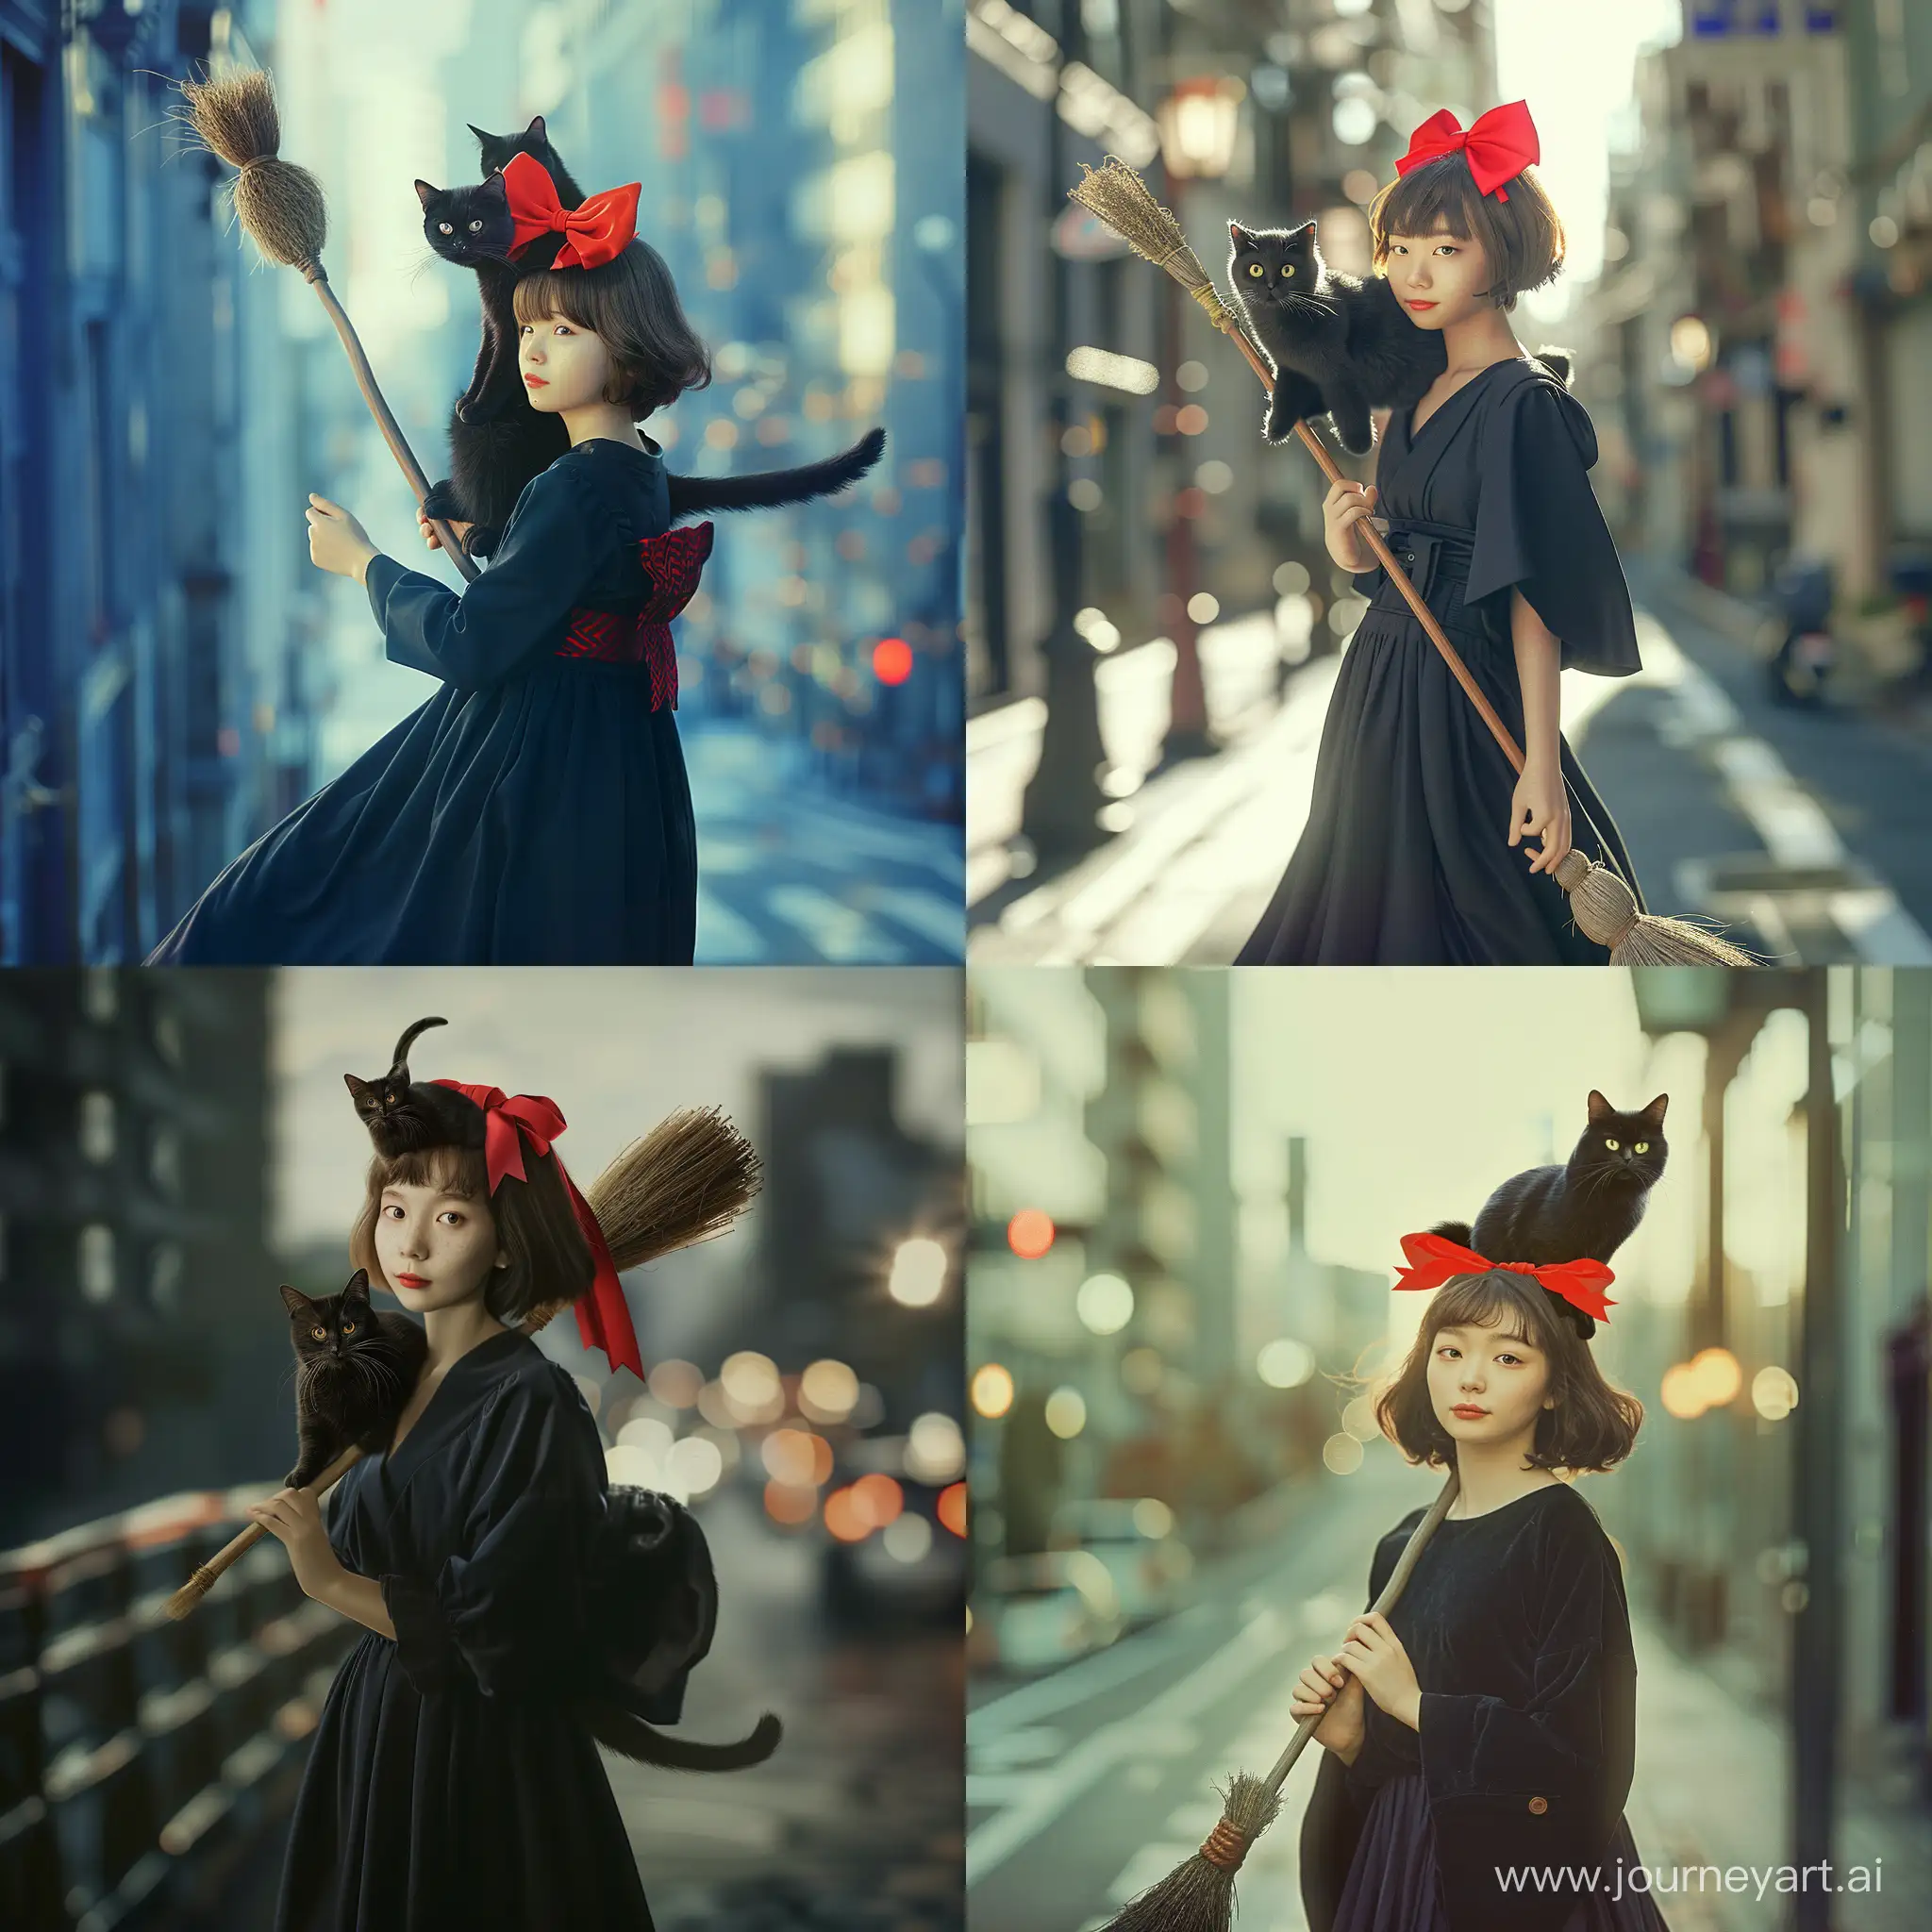 1個真實15歲日本女孩,棕色短髮,頭上有紅色大蝴蝶結,黑色長洋裝,肩膀上坐著隻黑貓,騎在掃把上,飛翔在城市街道上,超真實,高品質,超精緻,超寫實,散景,專業攝影